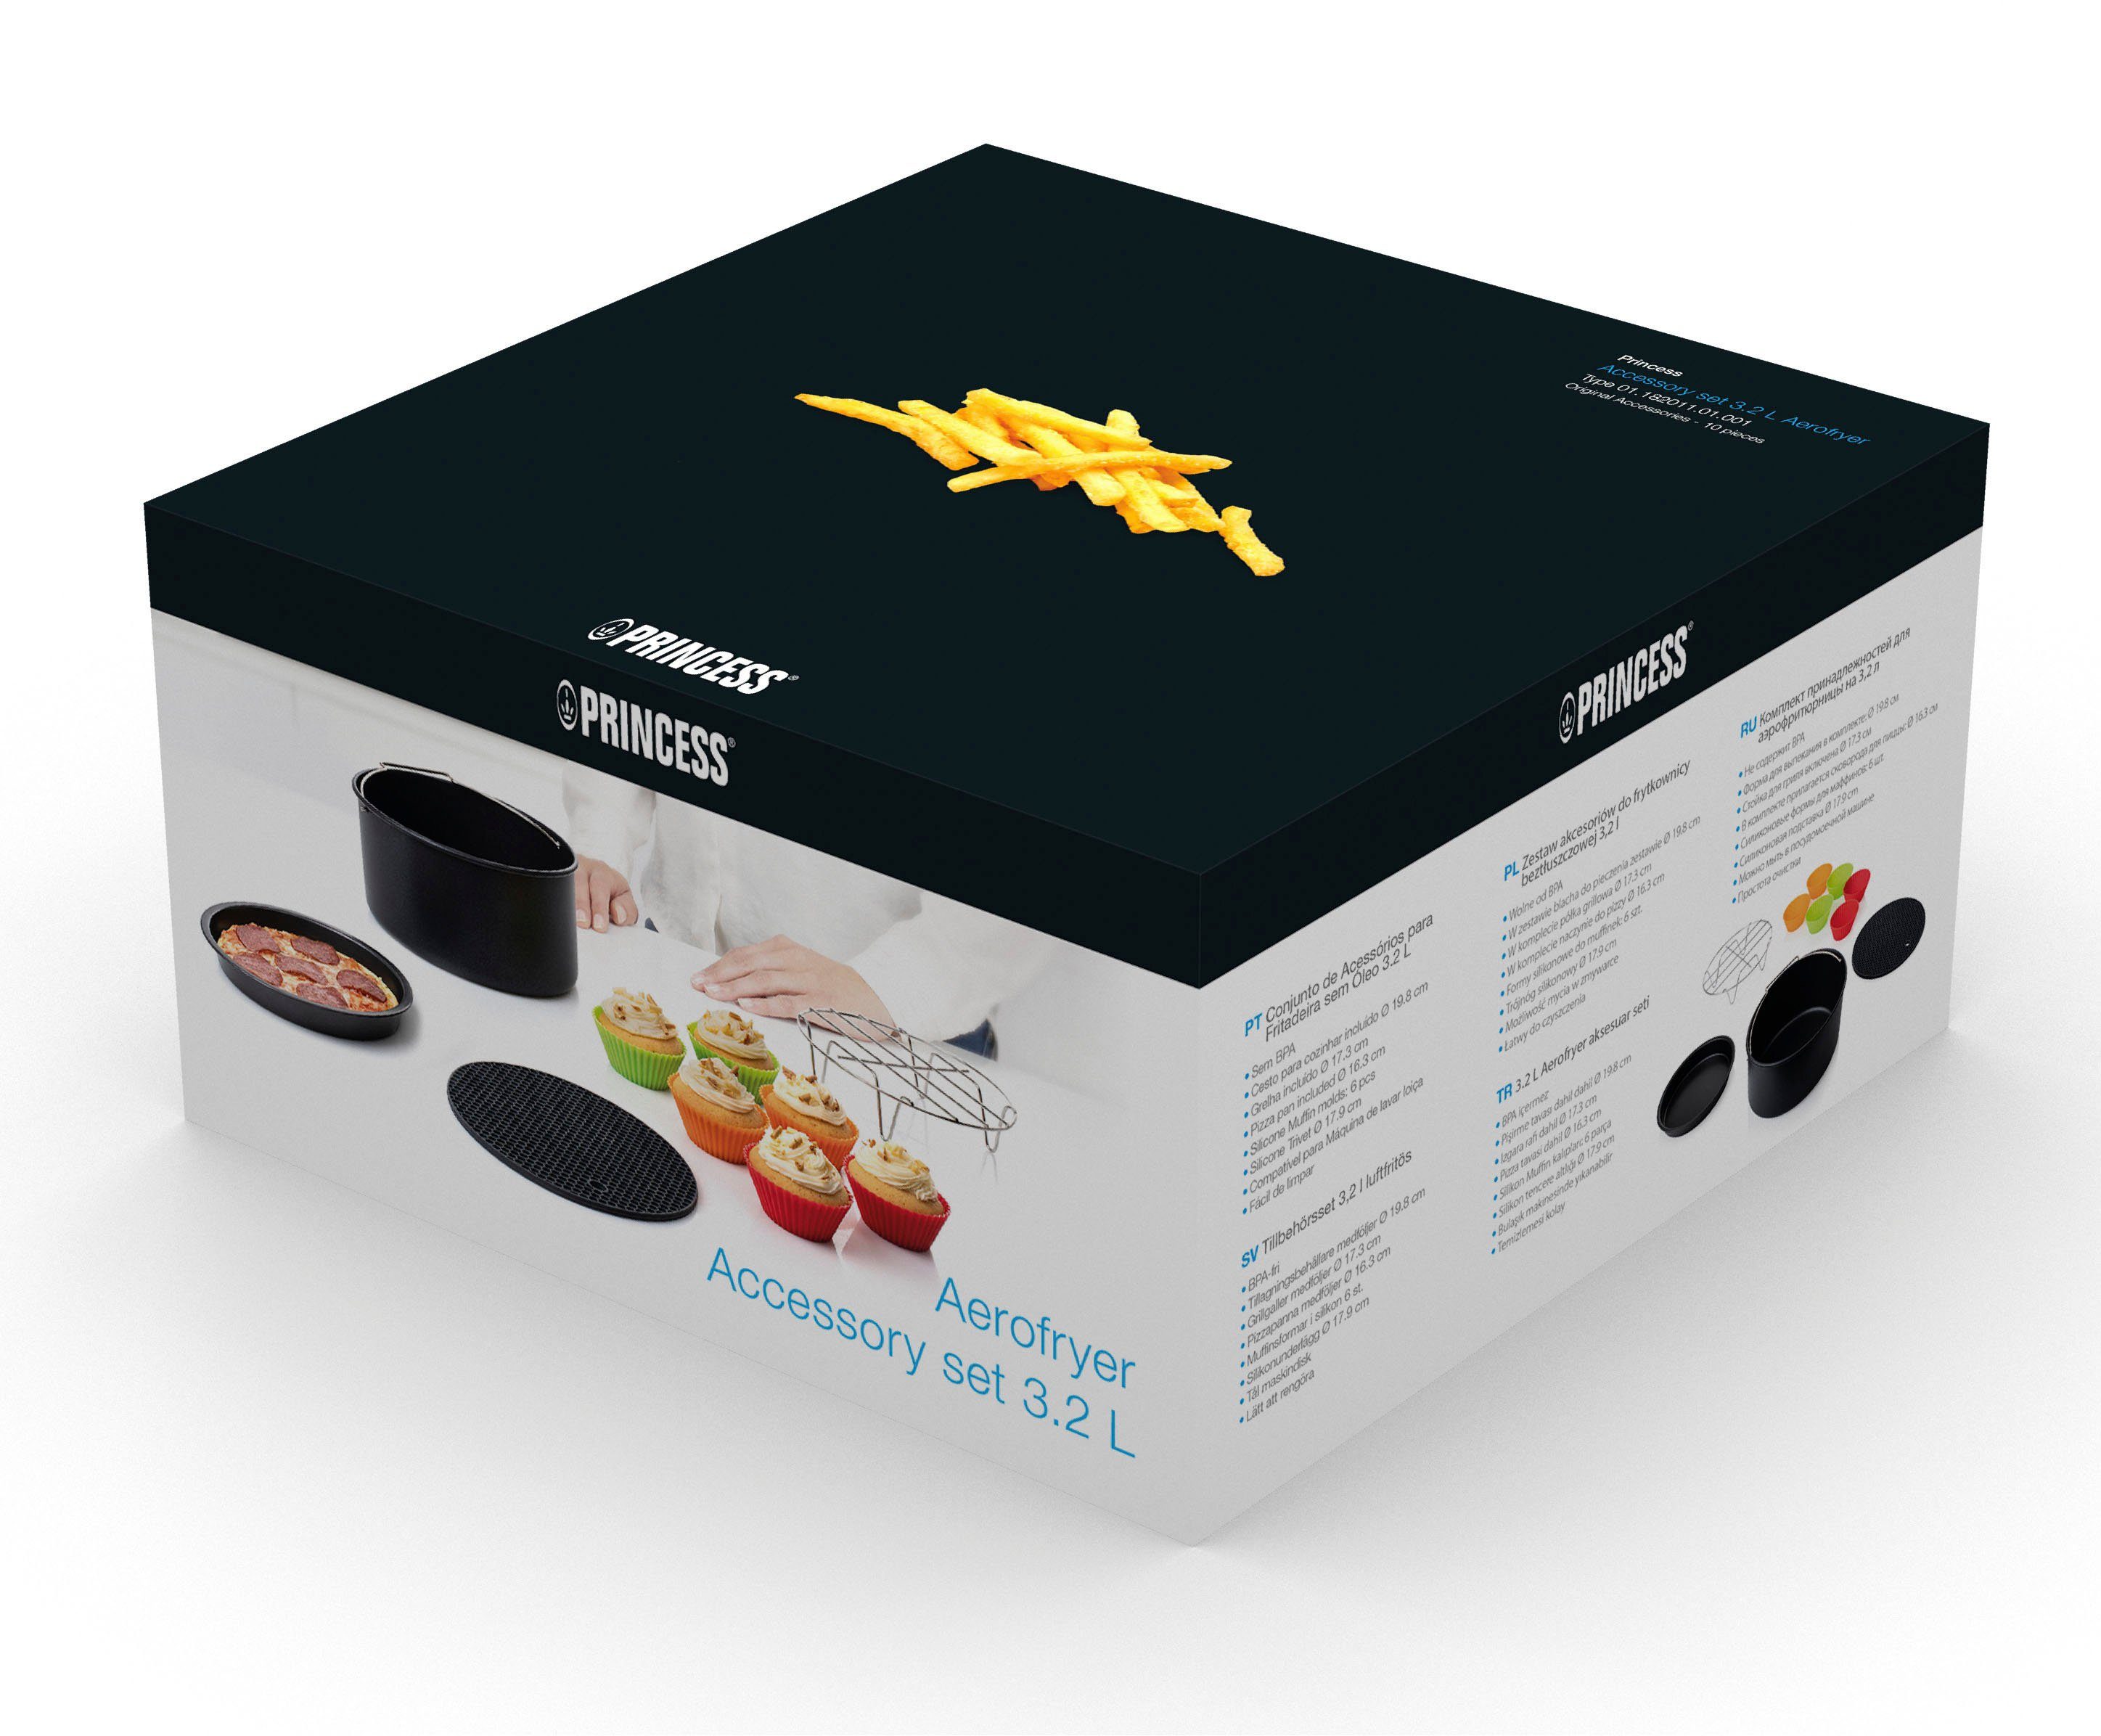 Küchenmaschinen für Zubehör Muffin-Formen), Zubehör-Set Aerofryer-Modelle PRINCESS (Backform+Grillrost+Pizzapfanne+6 182011 182021 182020,